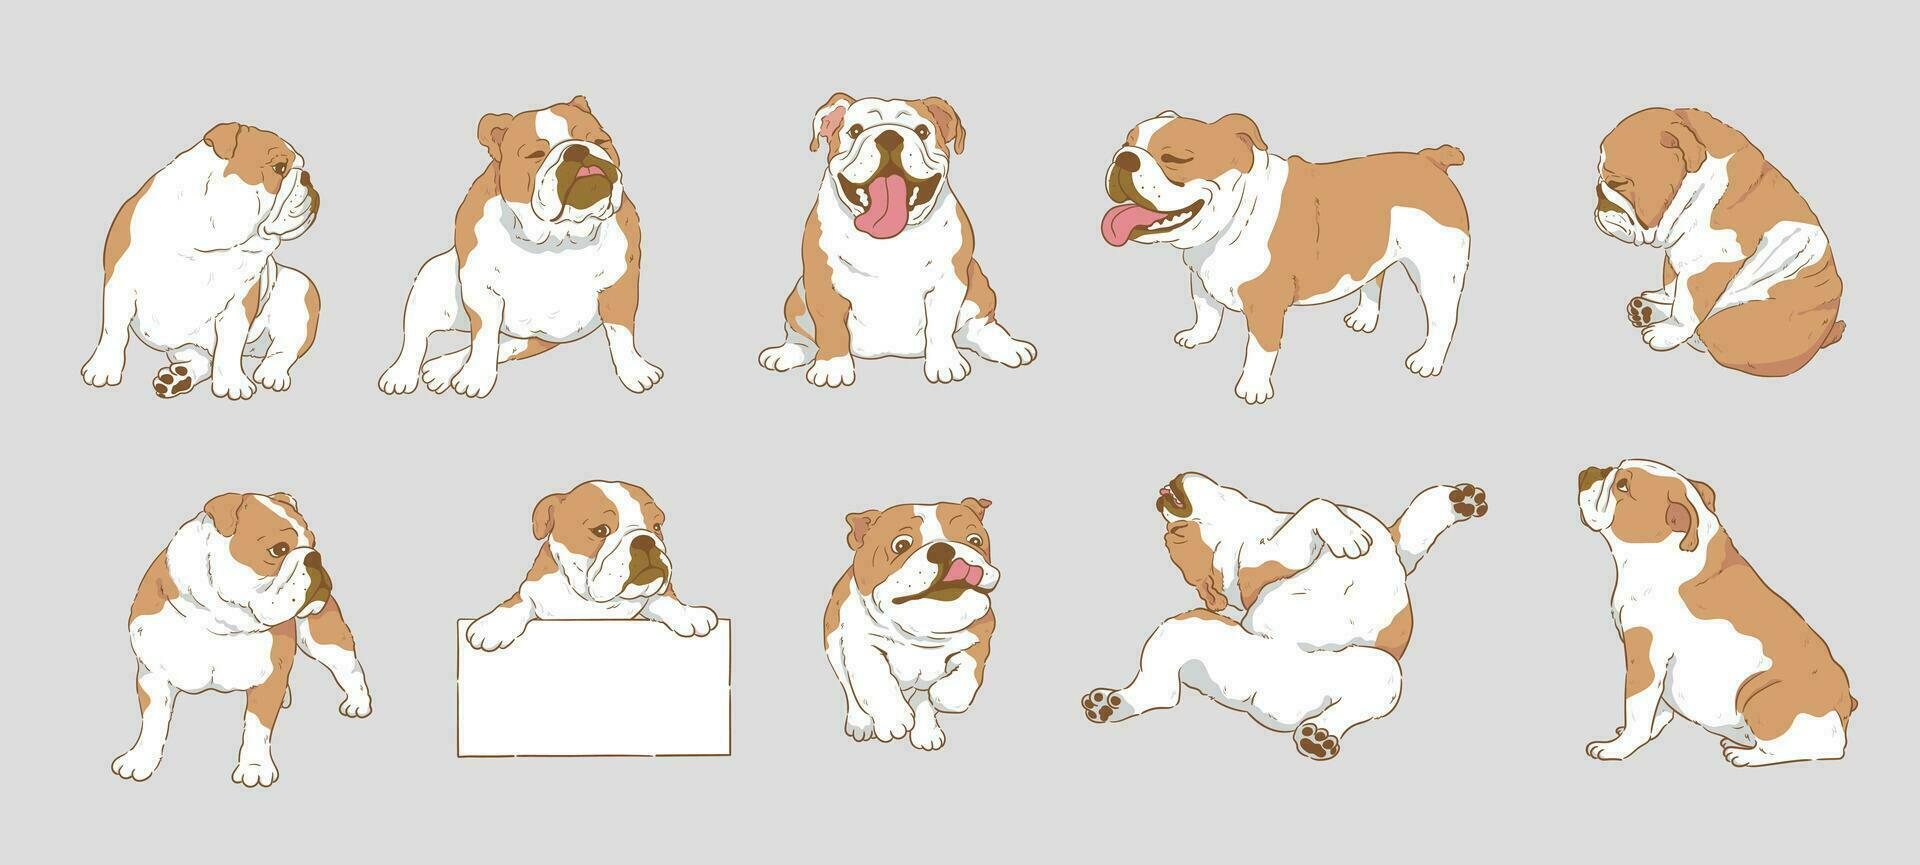 söt tecknad serie engelsk bulldogg eller brittiskt bulldogg uppsättning vektor